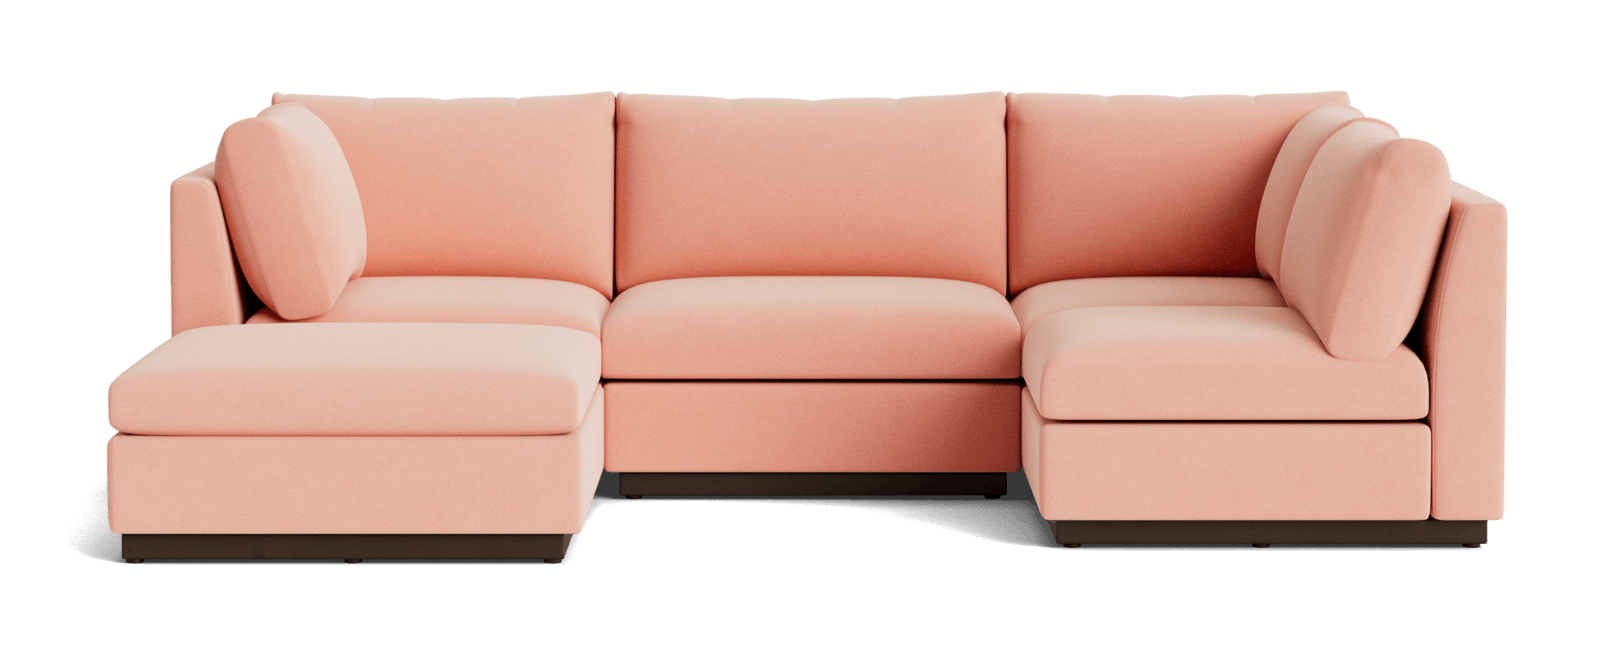 holt armless sofa sectional %285 piece%29 royale blush